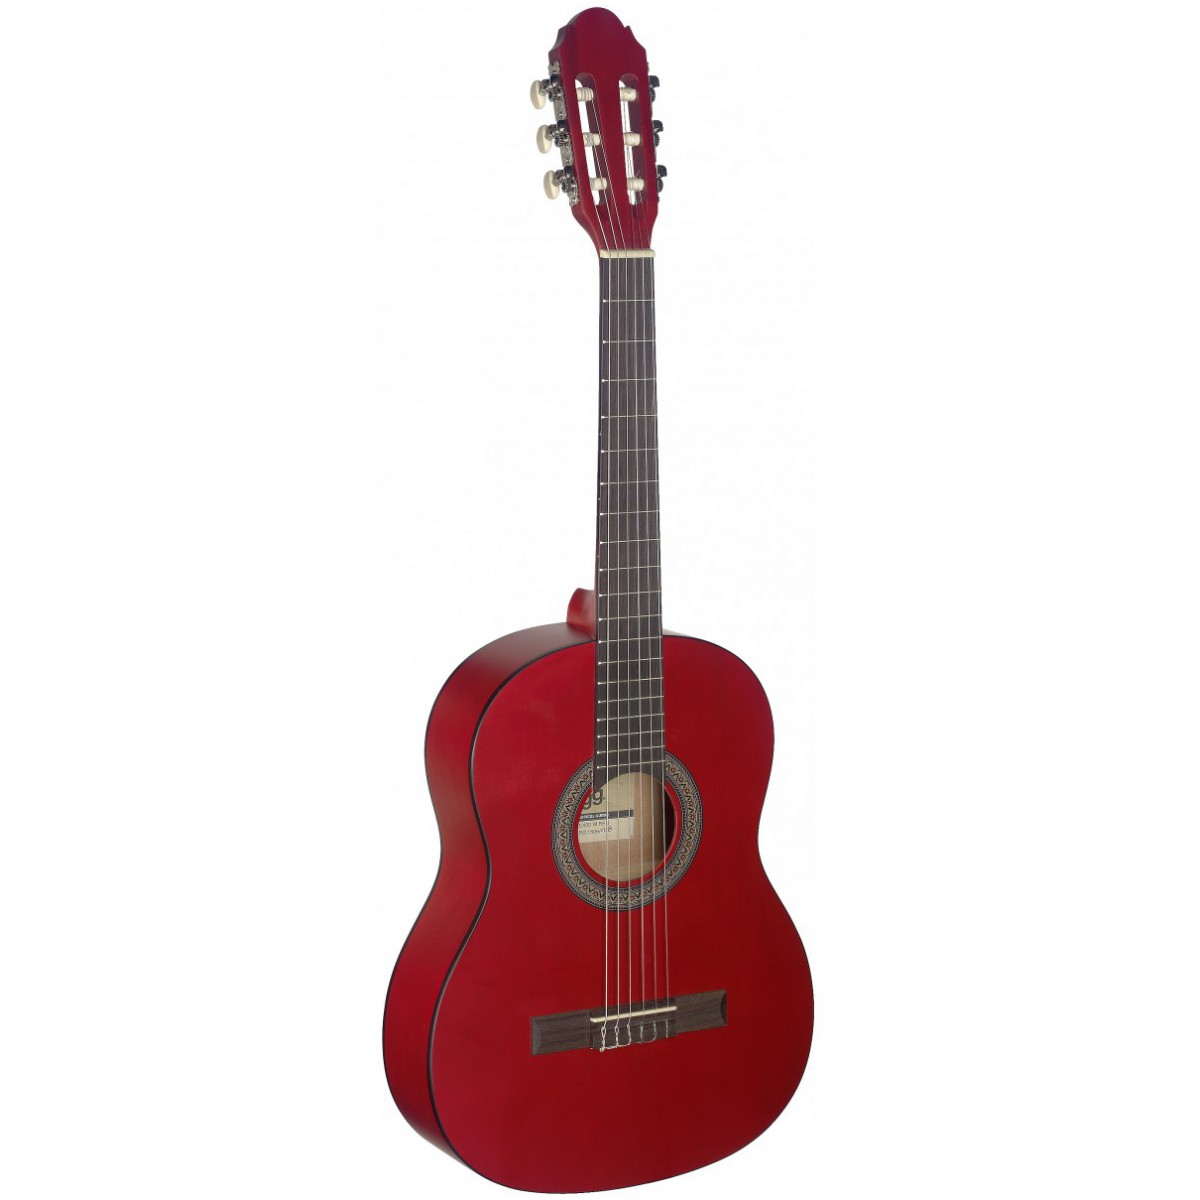 Stagg C430 M RED, klasická kytara 3/4, červená